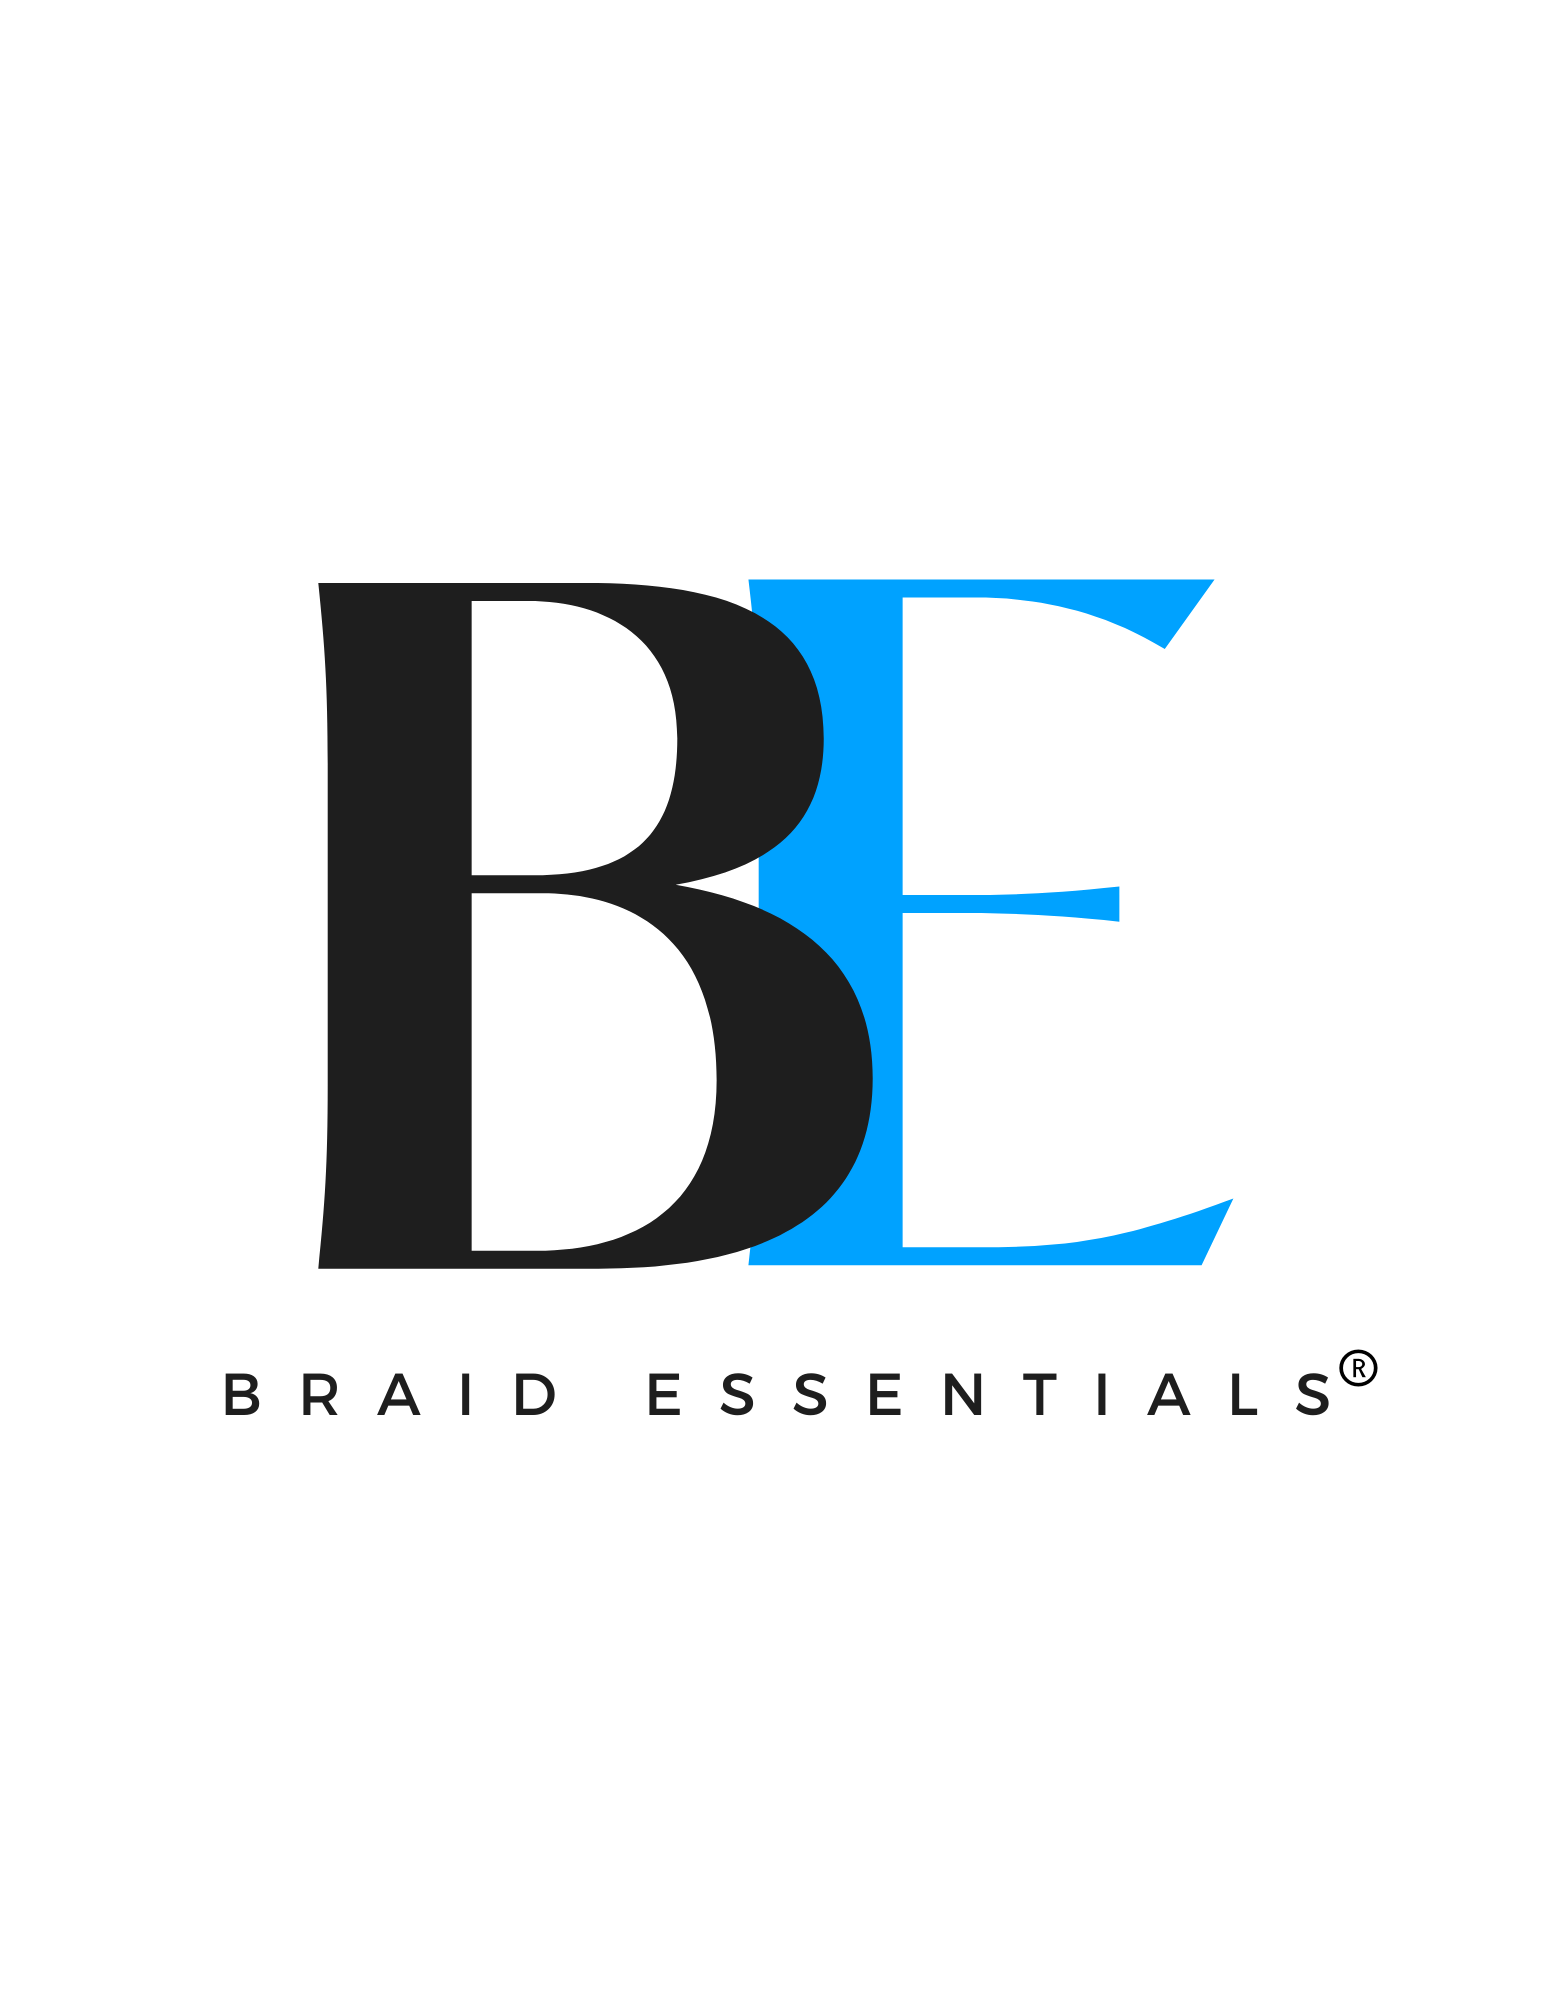 Braid Essentials